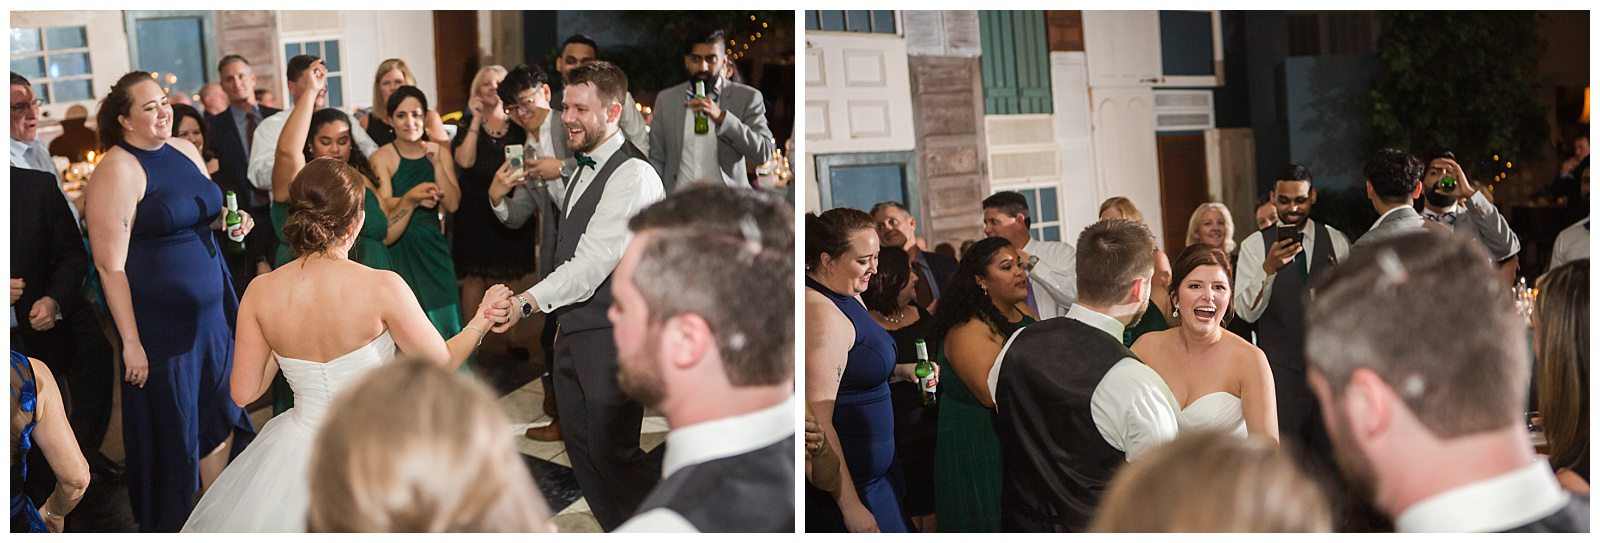 guests dancing at sohosouth wedding reception in savannah